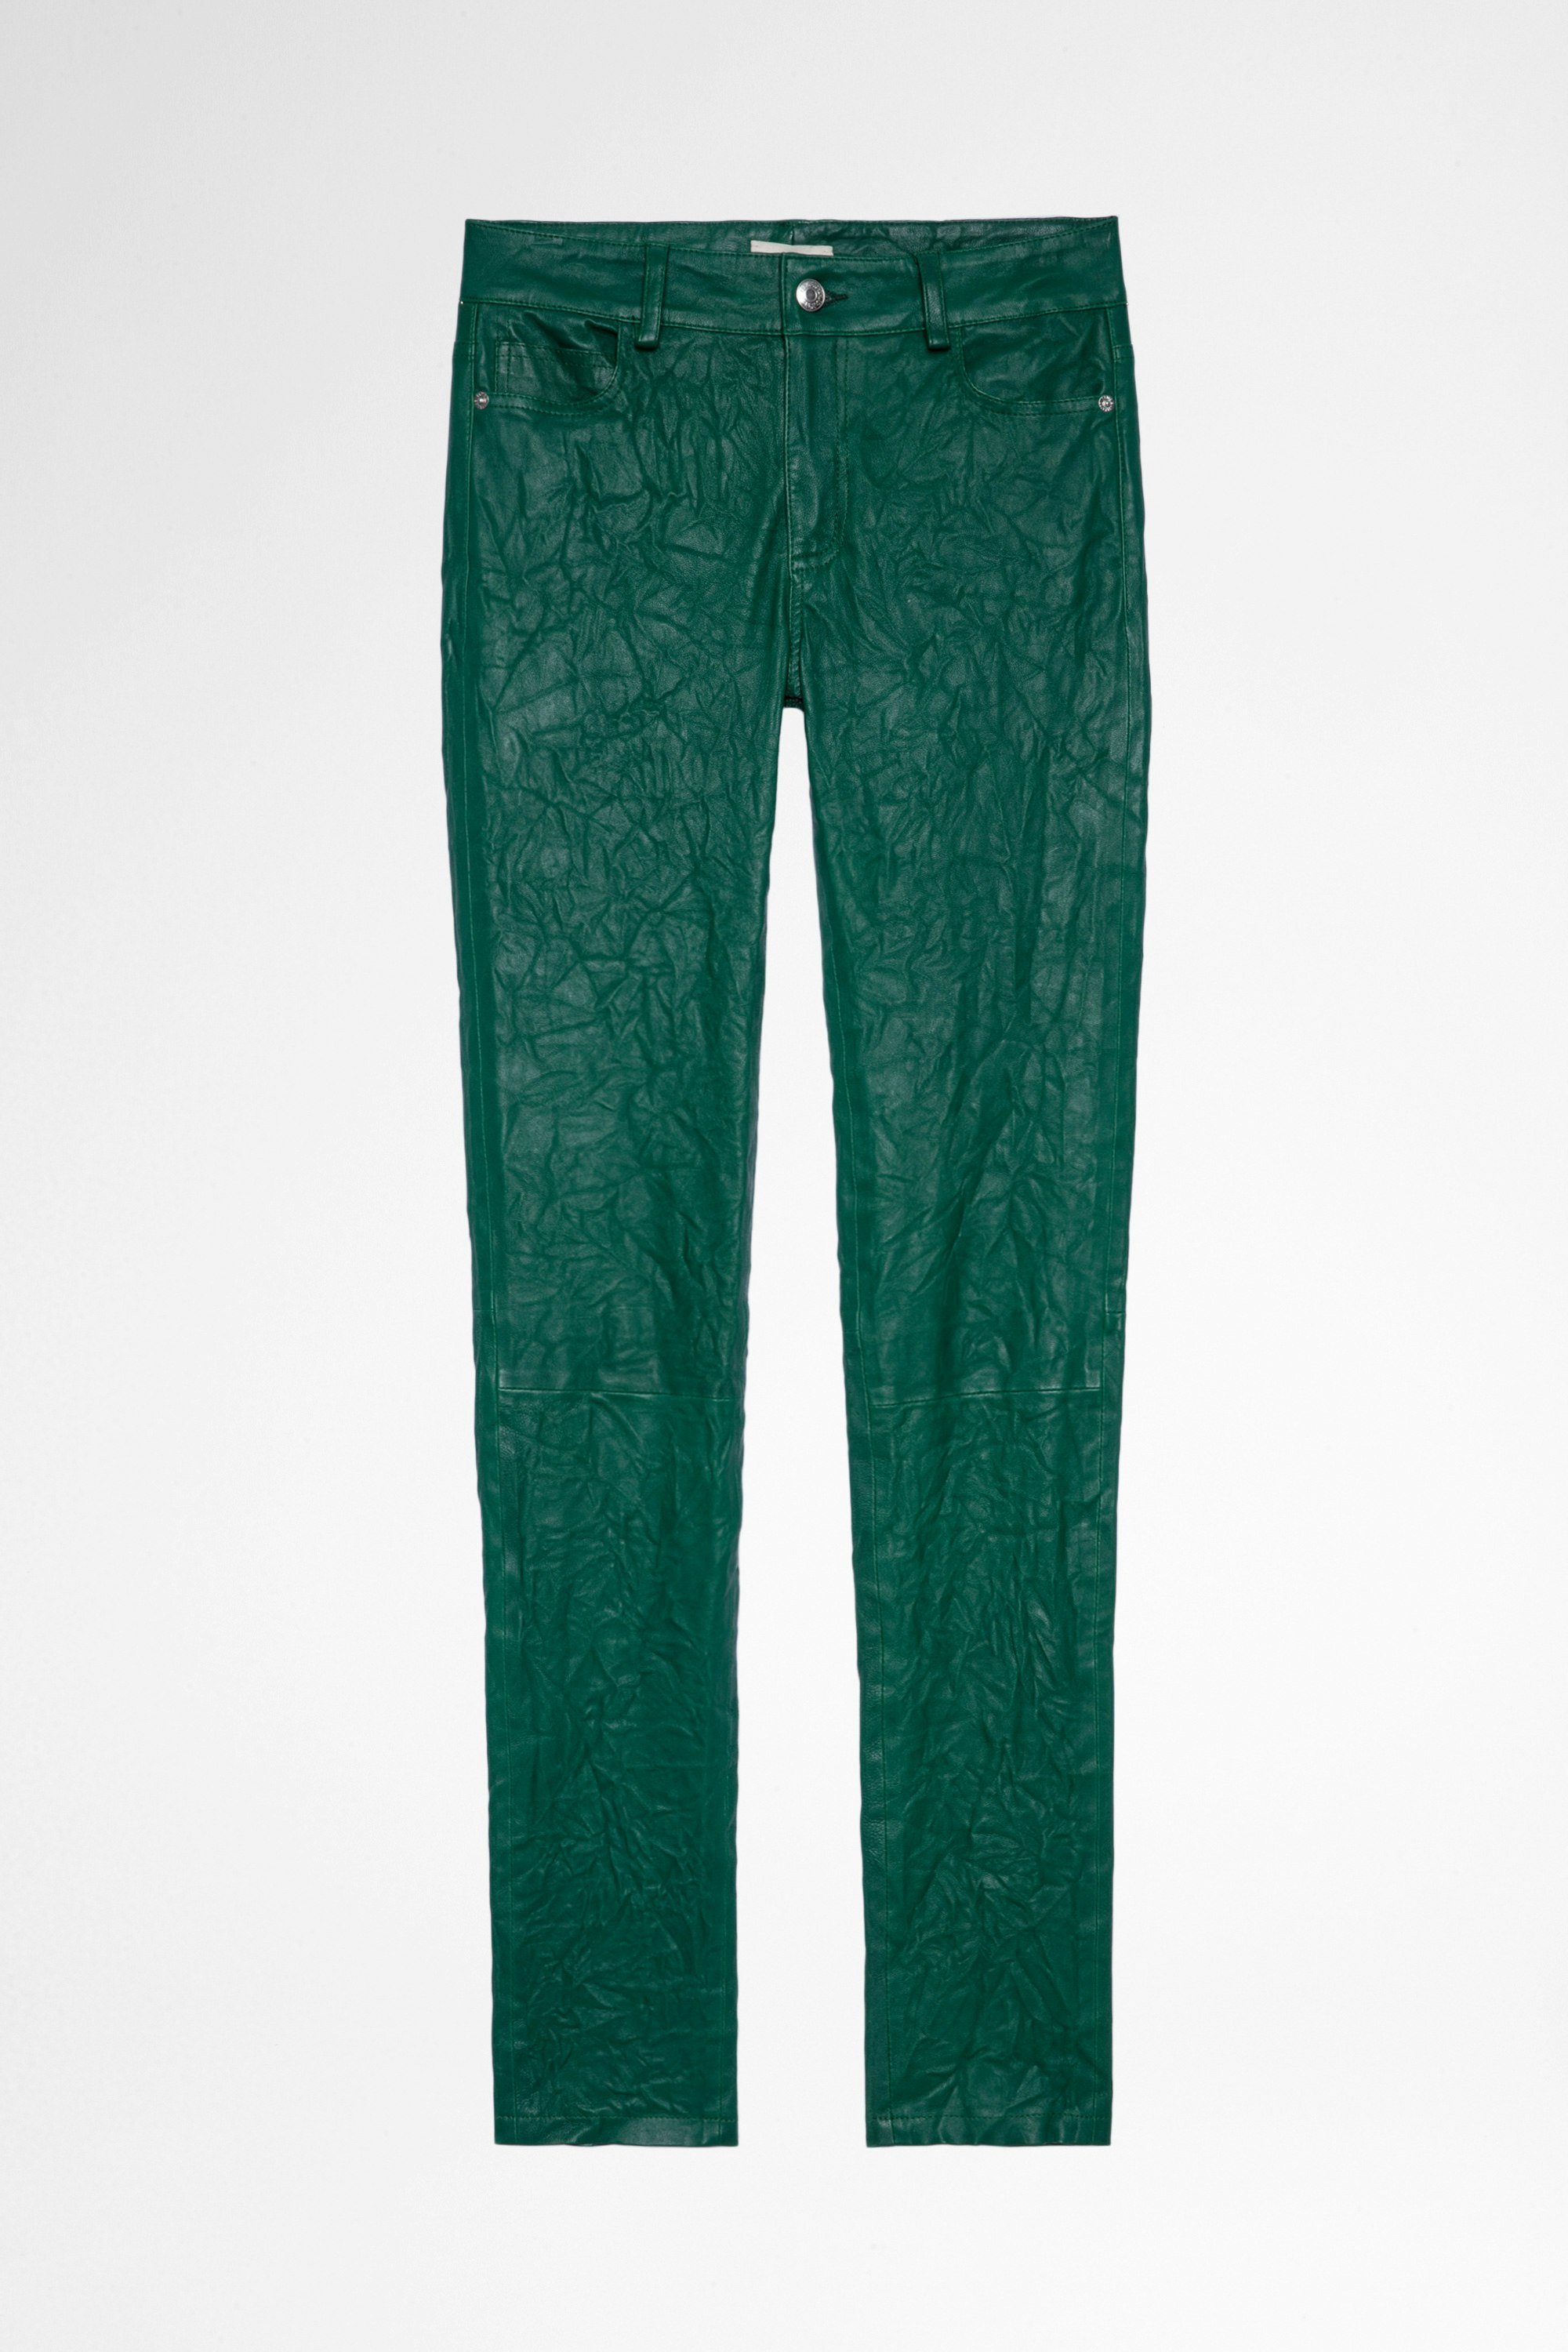 Pantalon Phlame Cuir froissé Pantalon en cuir froissé vert Femme. En achetant ce produit, vous soutenez un production de cuir responsable à travers le Leather Working Group